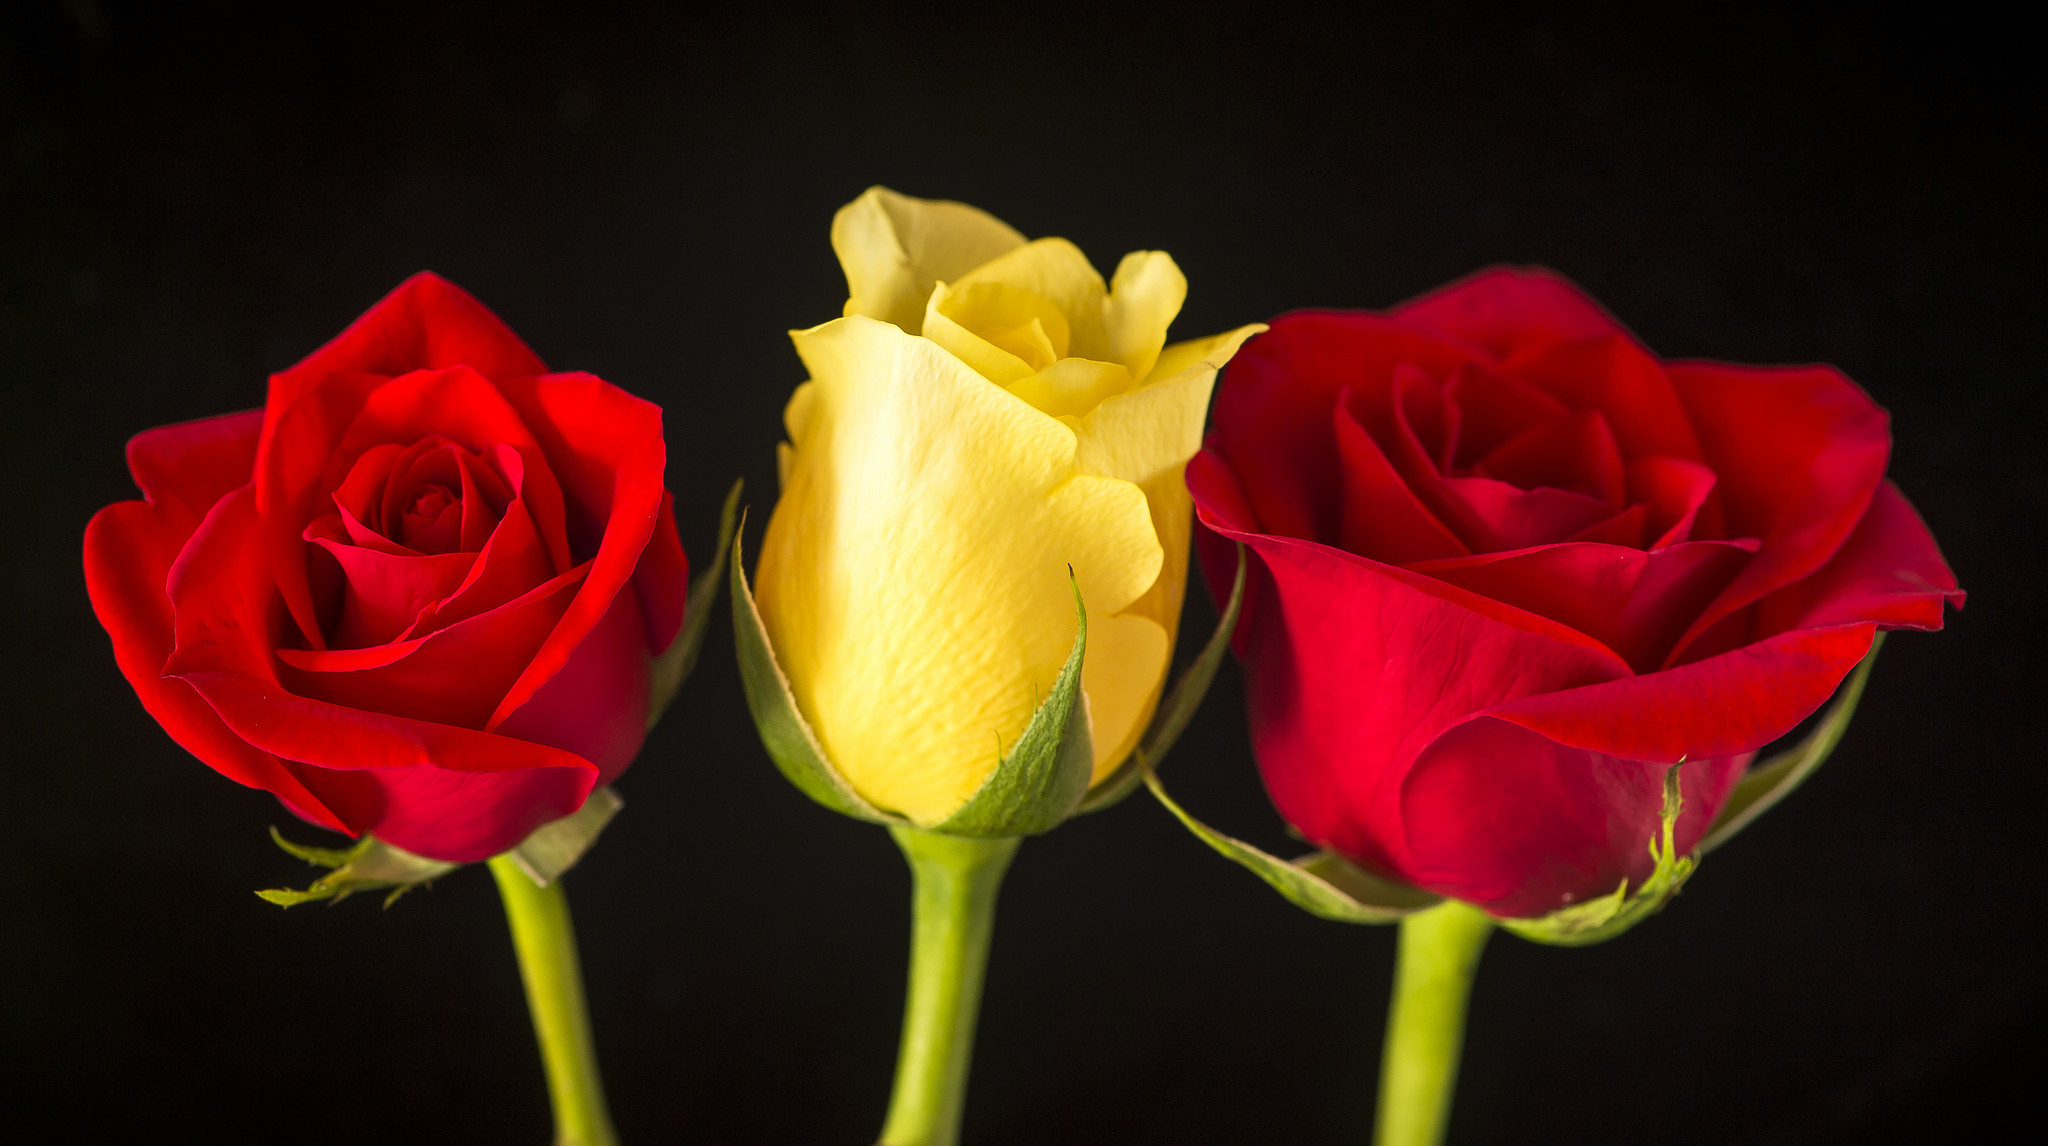 Gullar rasmi atirgul. Три розочки. Три красные розы. Три розы разных цветов.